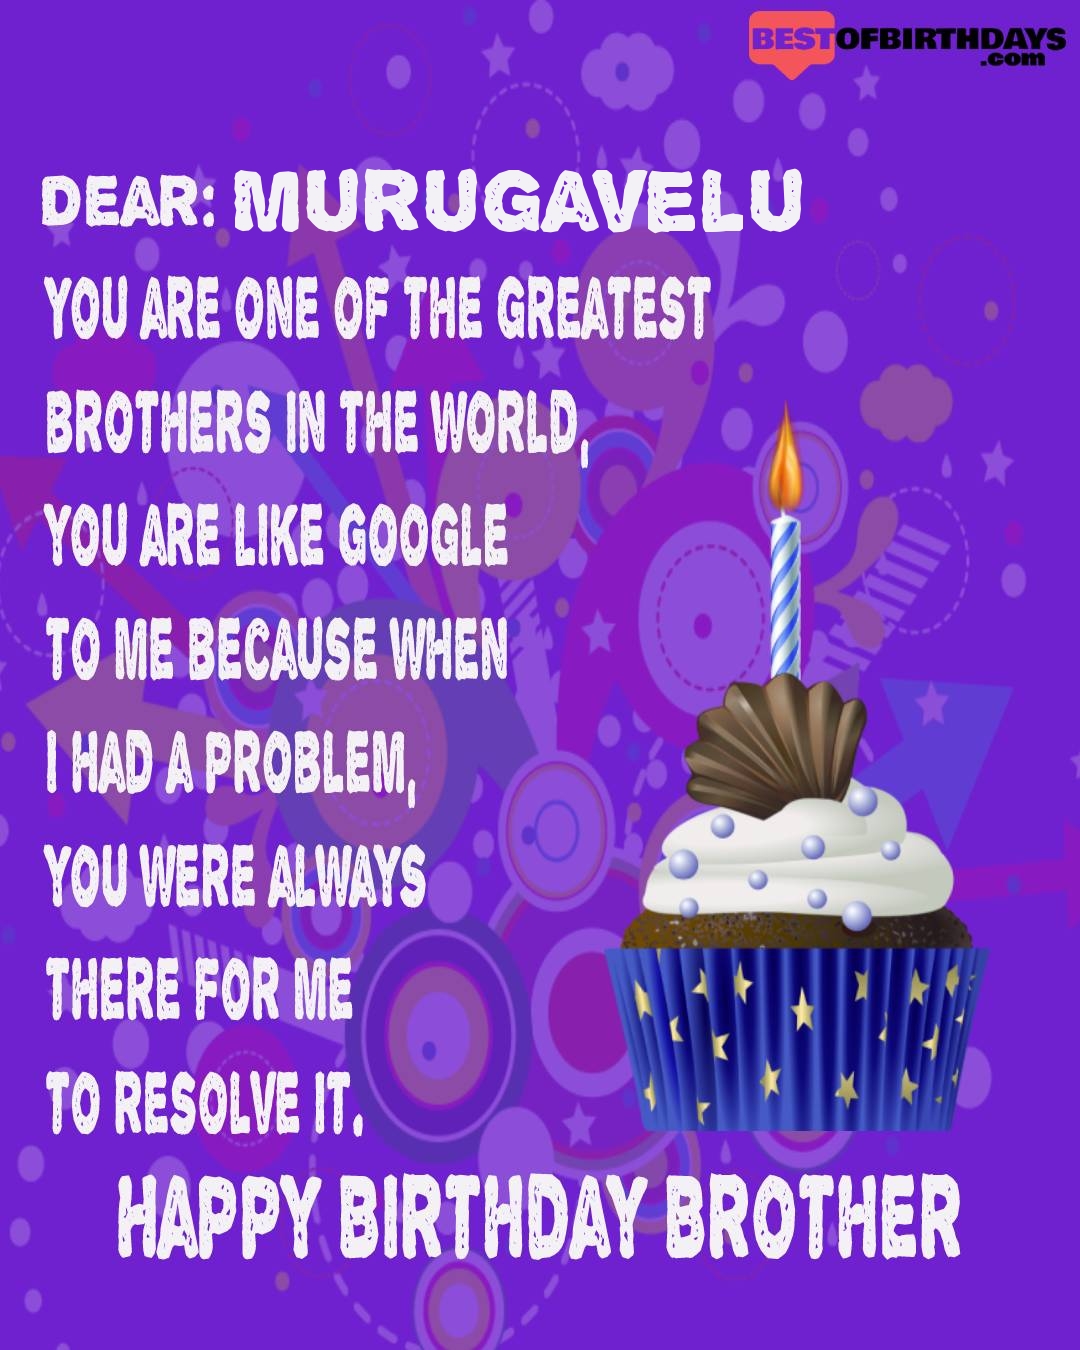 Happy birthday murugavelu bhai brother bro